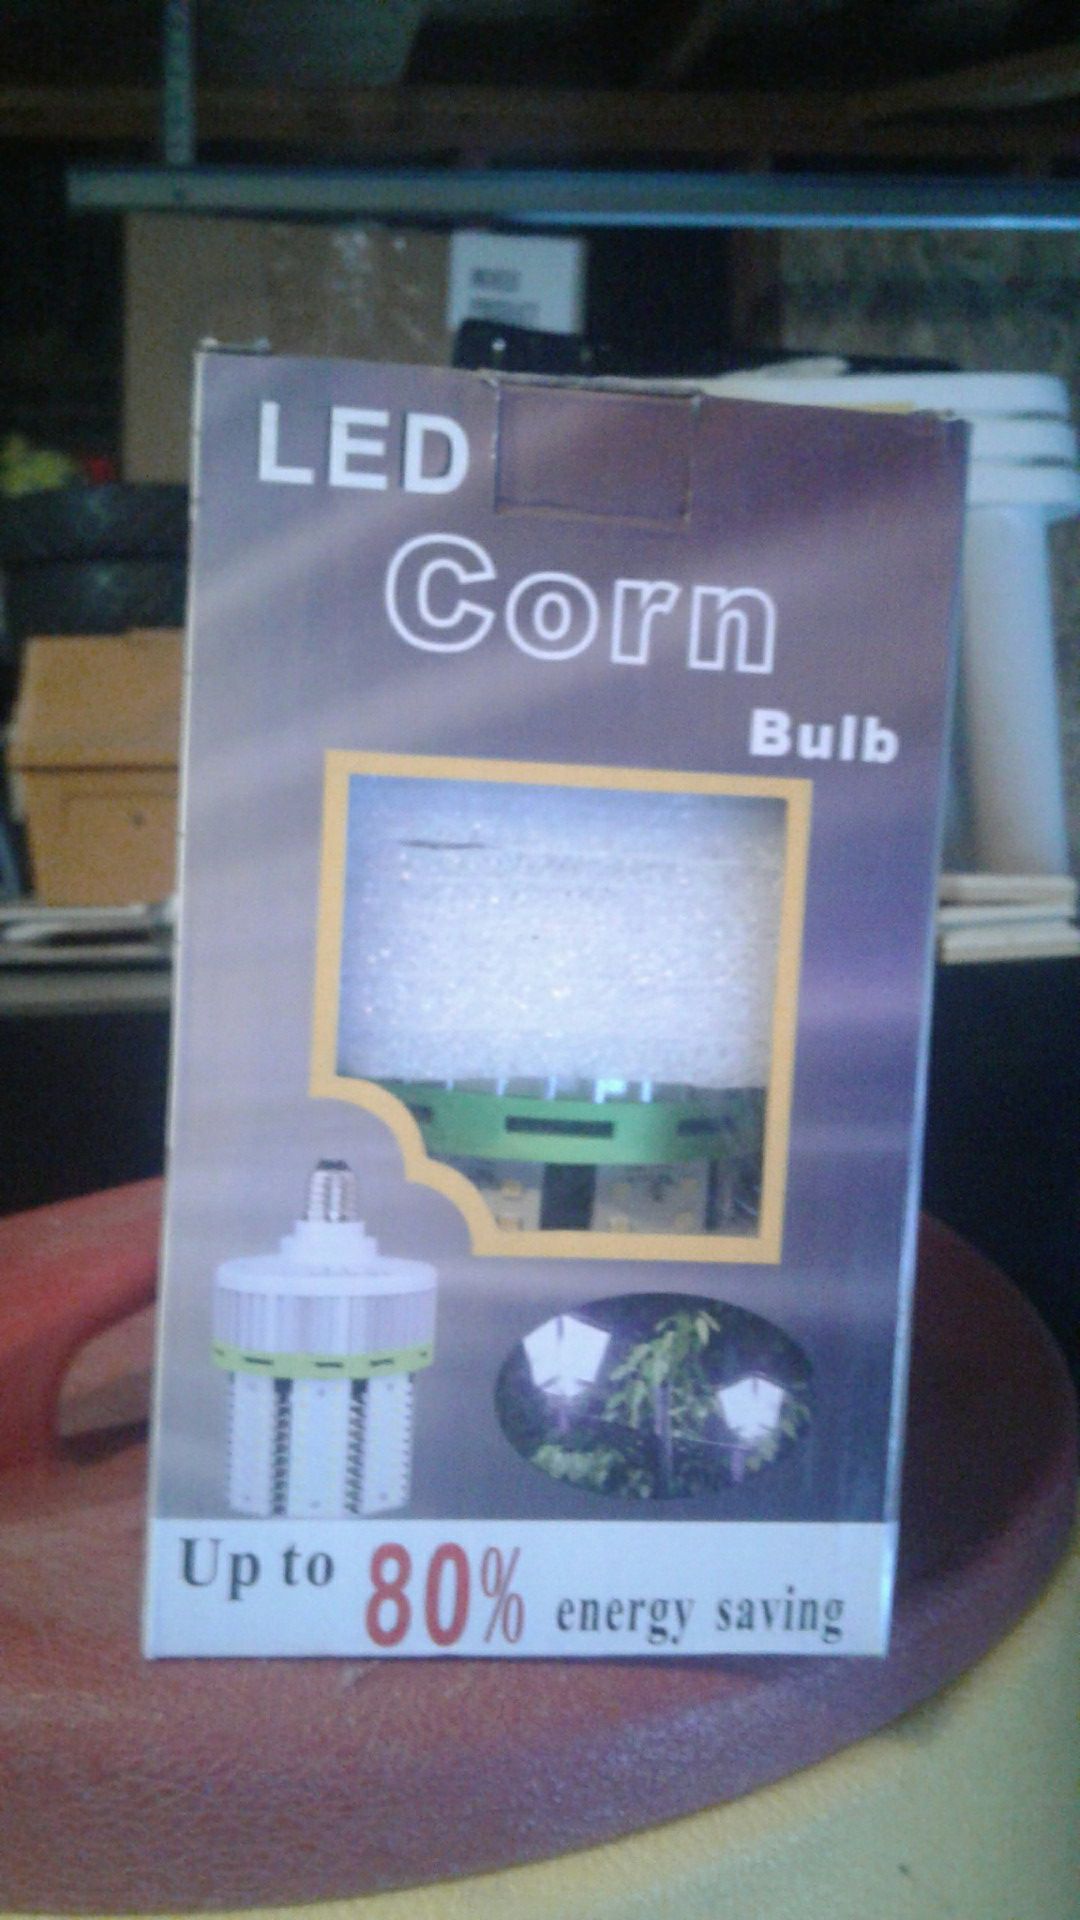 Led corn bulb